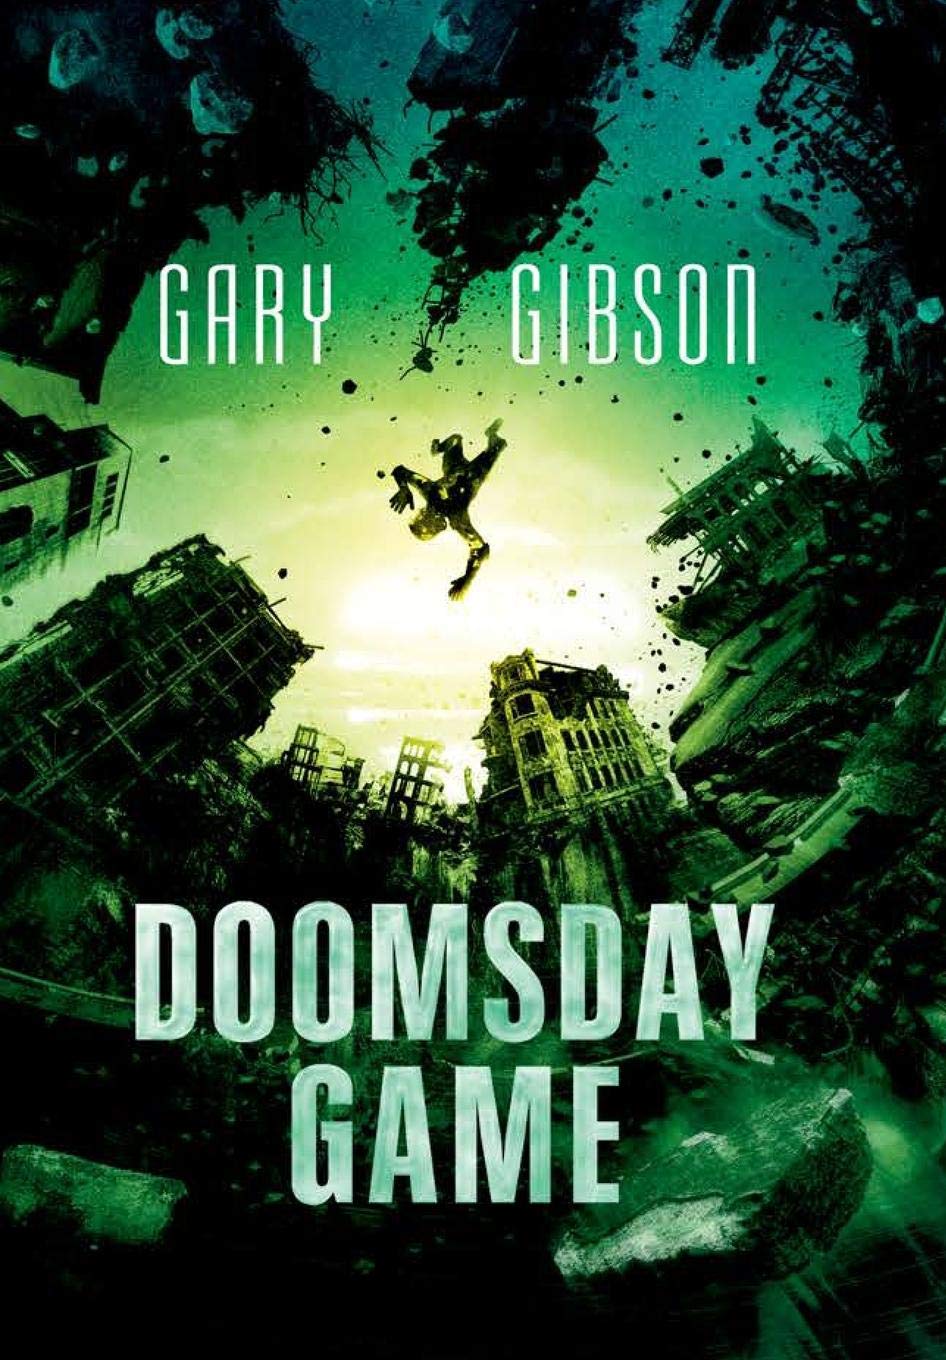 « Doomsday Game », de Gary Gibson